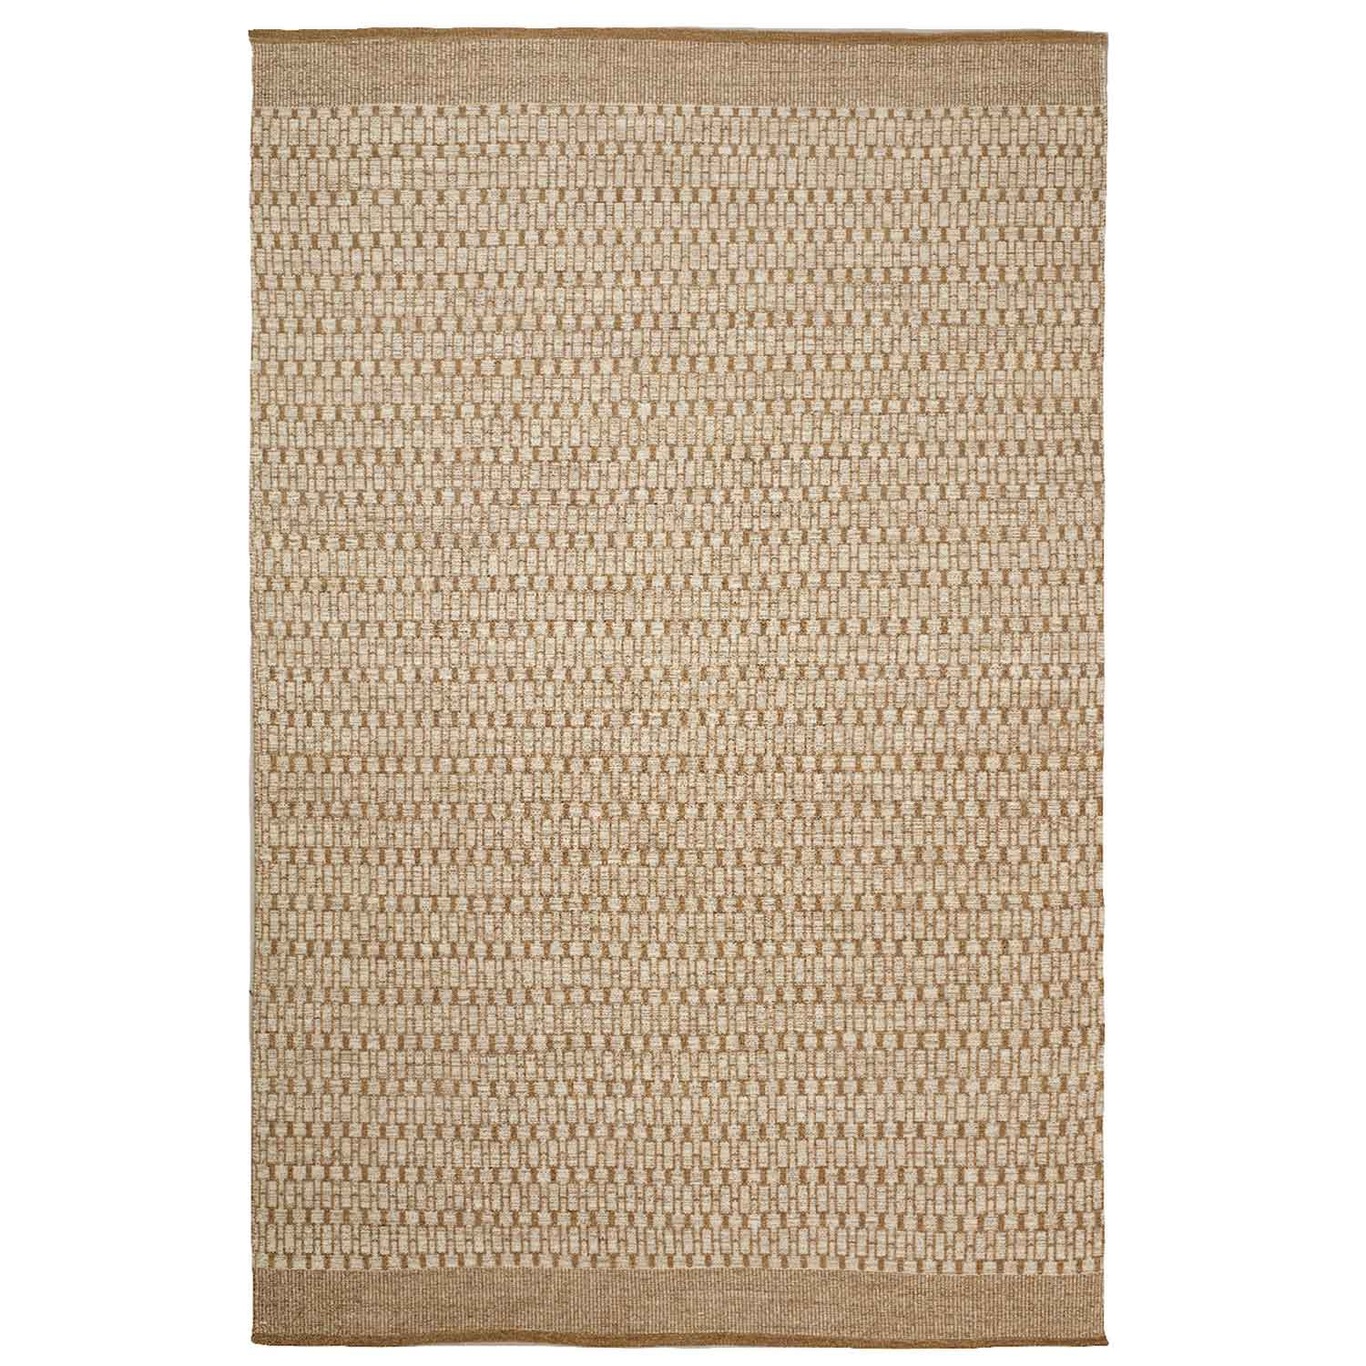 Mahi Dhurry Rug 200x300 cm, Beige/Off white